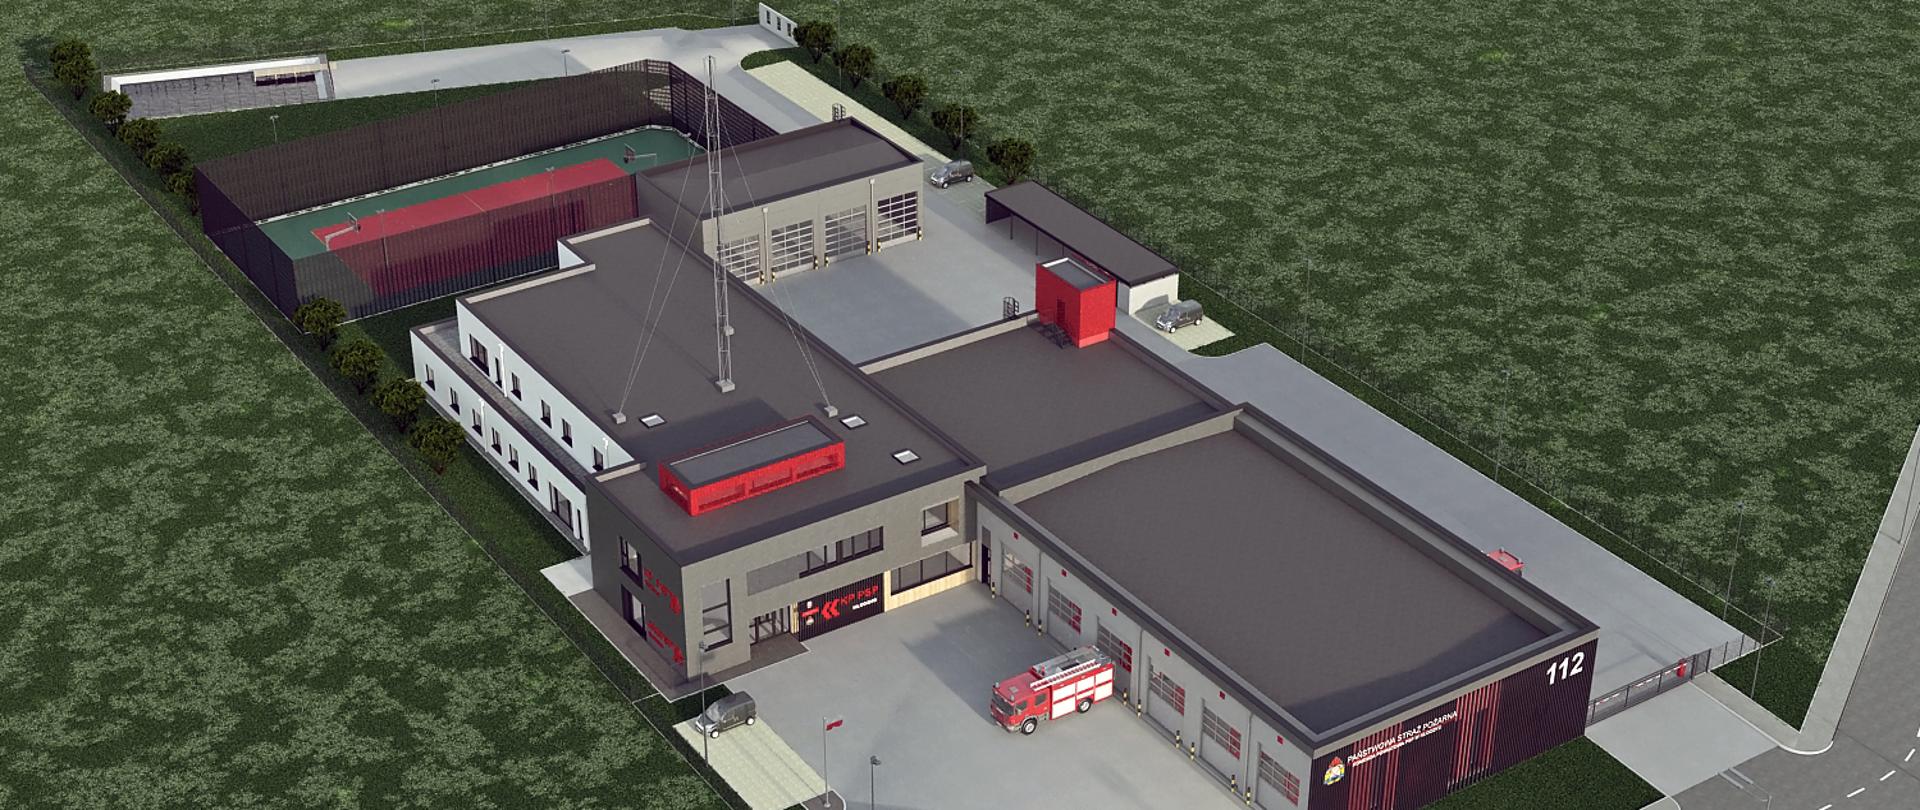 Wizualizacja nowego obiektu Komendy Powiatowej Państwowej Straży Pożarnej oraz Jednostki Ratowniczo-Gaśniczej w Kłodzku